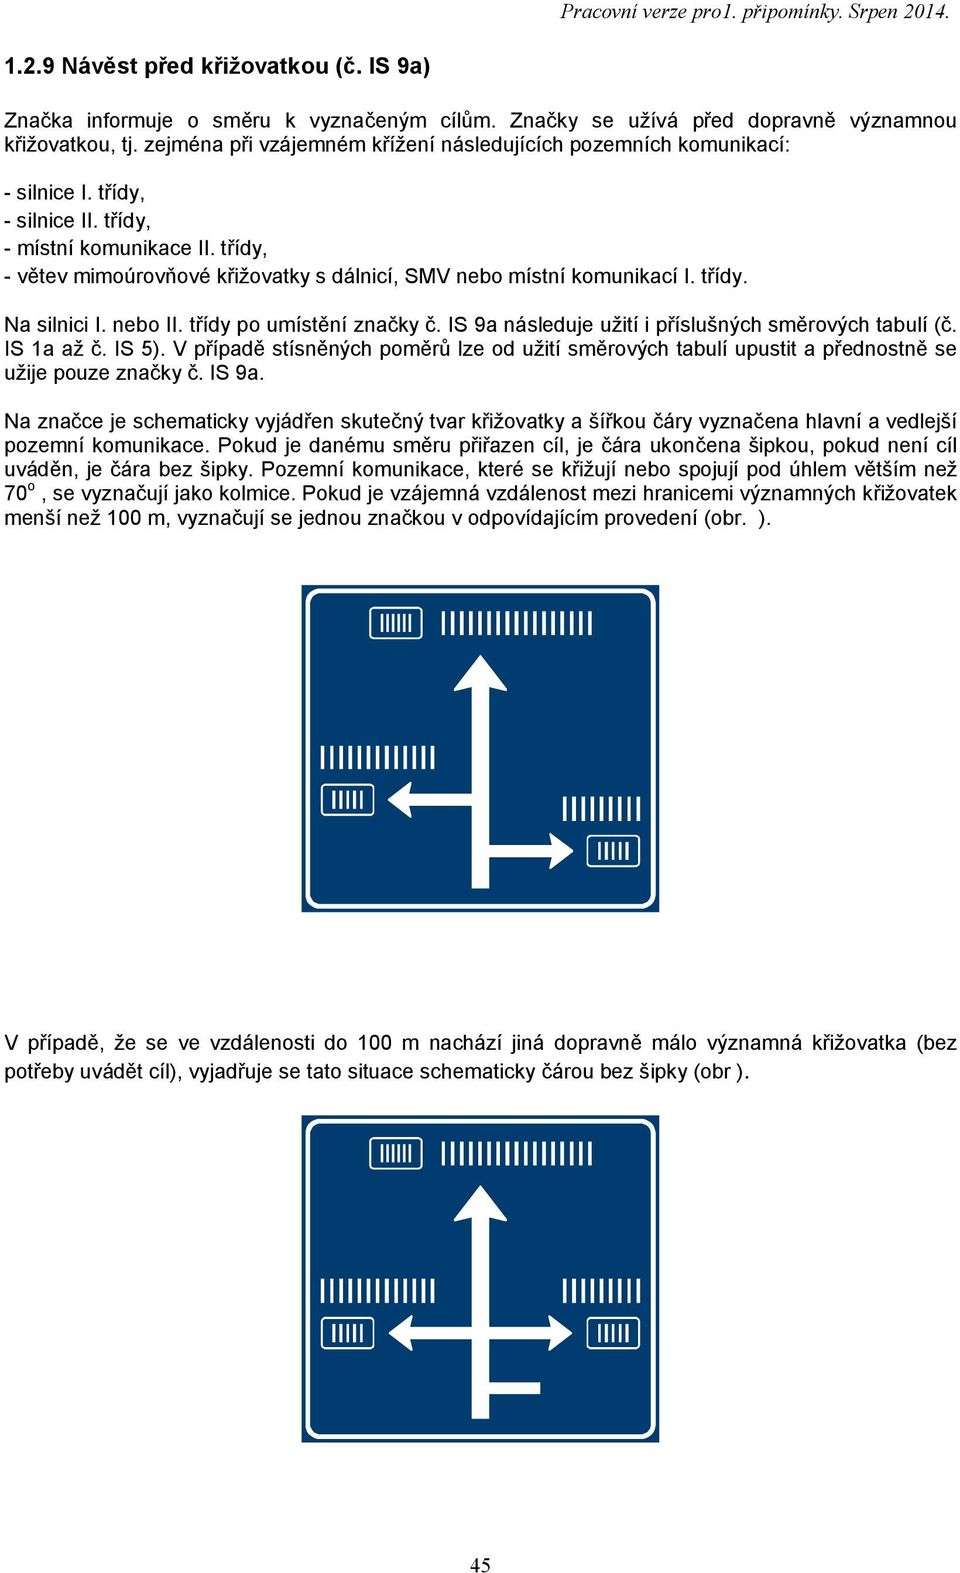 třídy, - větev mimoúrovňové křižovatky s dálnicí, SMV nebo místní komunikací I. třídy. Na silnici I. nebo II. třídy po umístění značky č. IS 9a následuje užití i příslušných směrových tabulí (č.